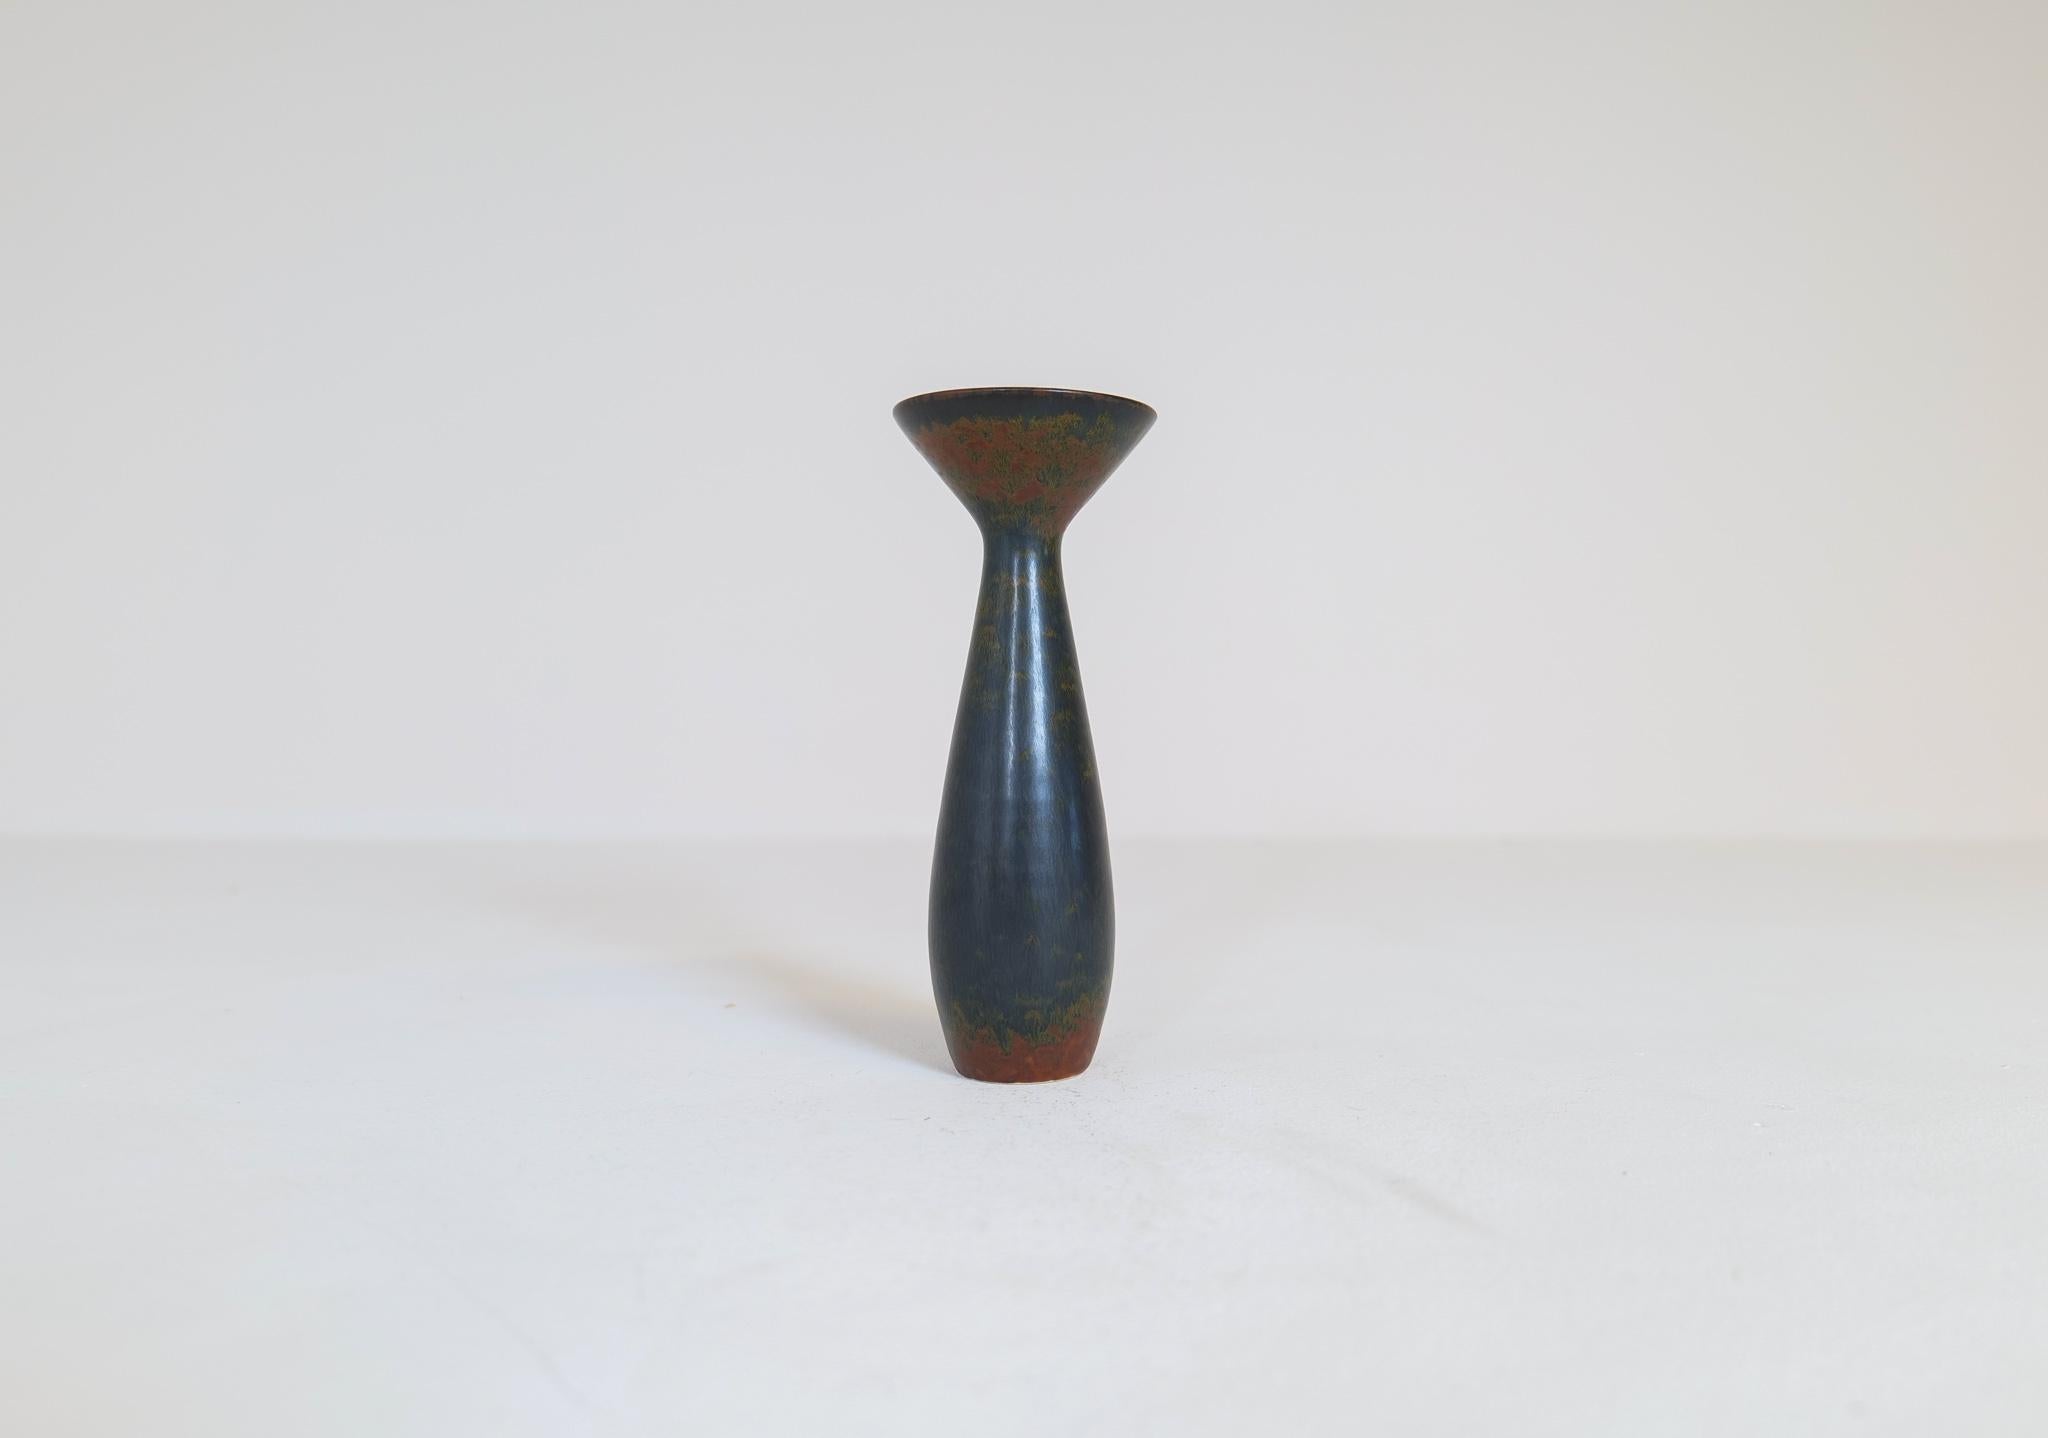 Ce vase de Rörstrand et du fabricant ou designer Carl Harry Stålhane a été fabriqué en Suède au milieu du siècle dernier. Sa belle glaçure combinée à ses incroyables formes en font une pièce d'exception. La glaçure et les formes organiques donnent